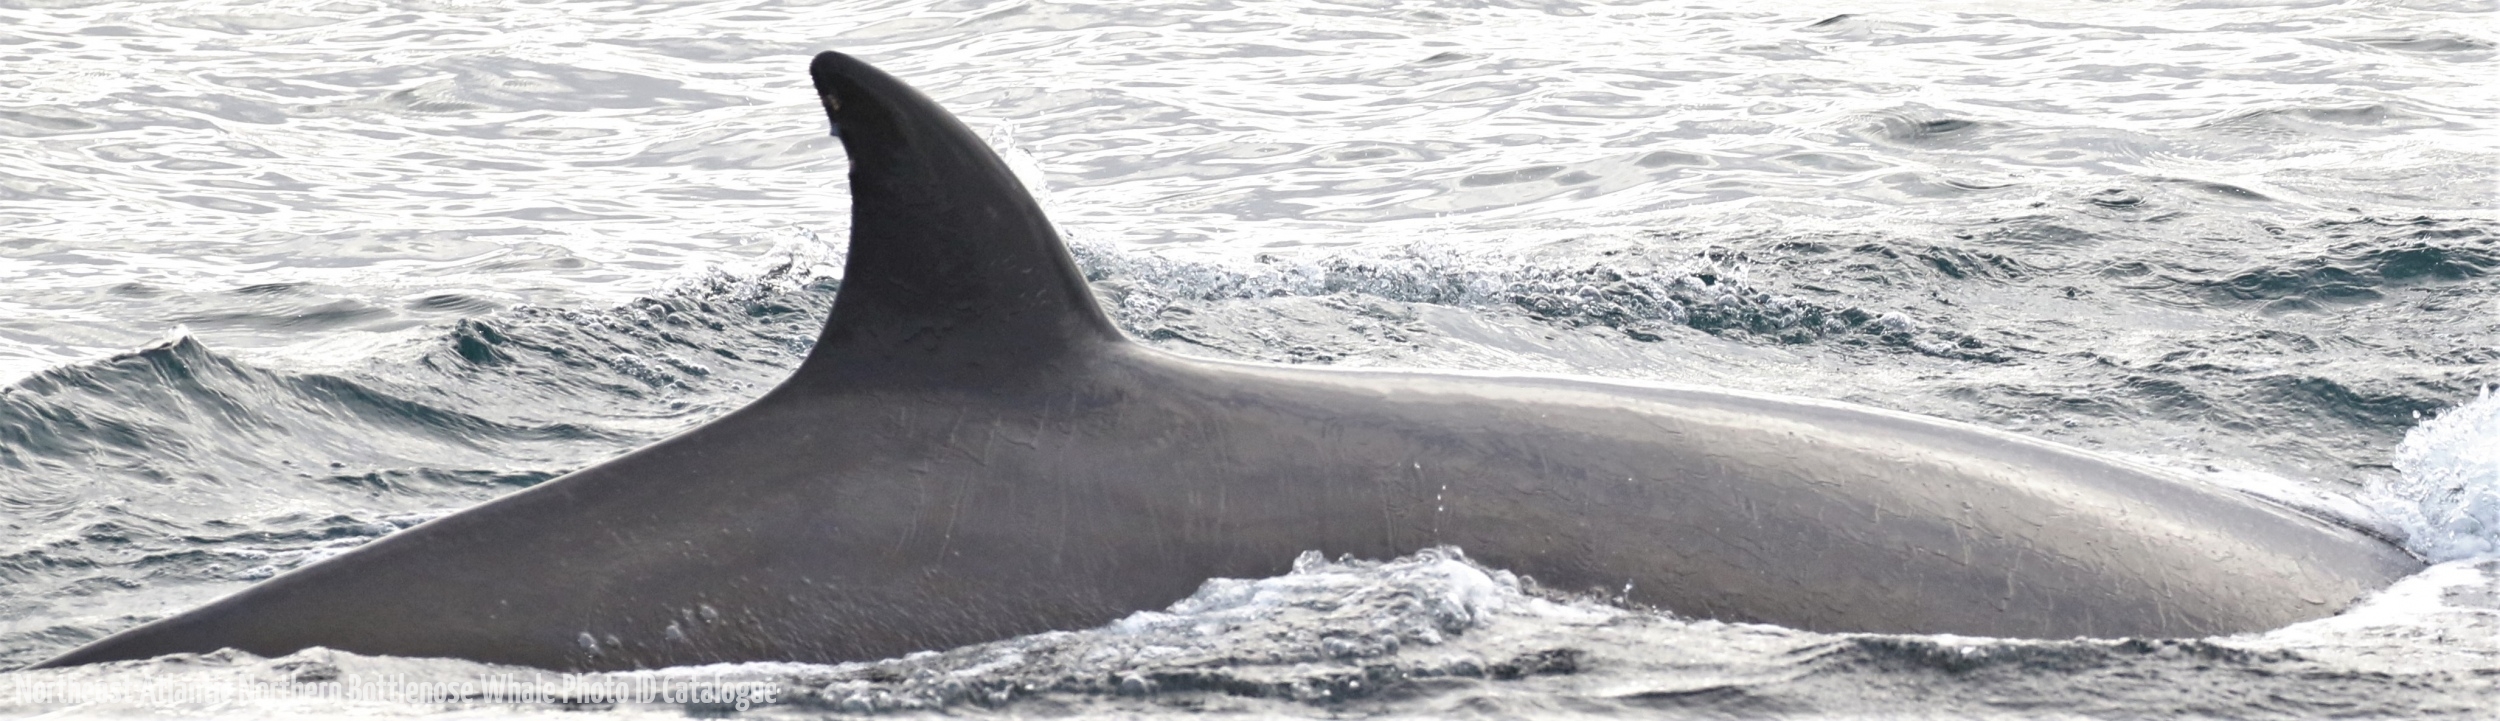 Whale ID: 0361,  Date taken: 16-06-2016,  Photographer: Eilidh Siegal